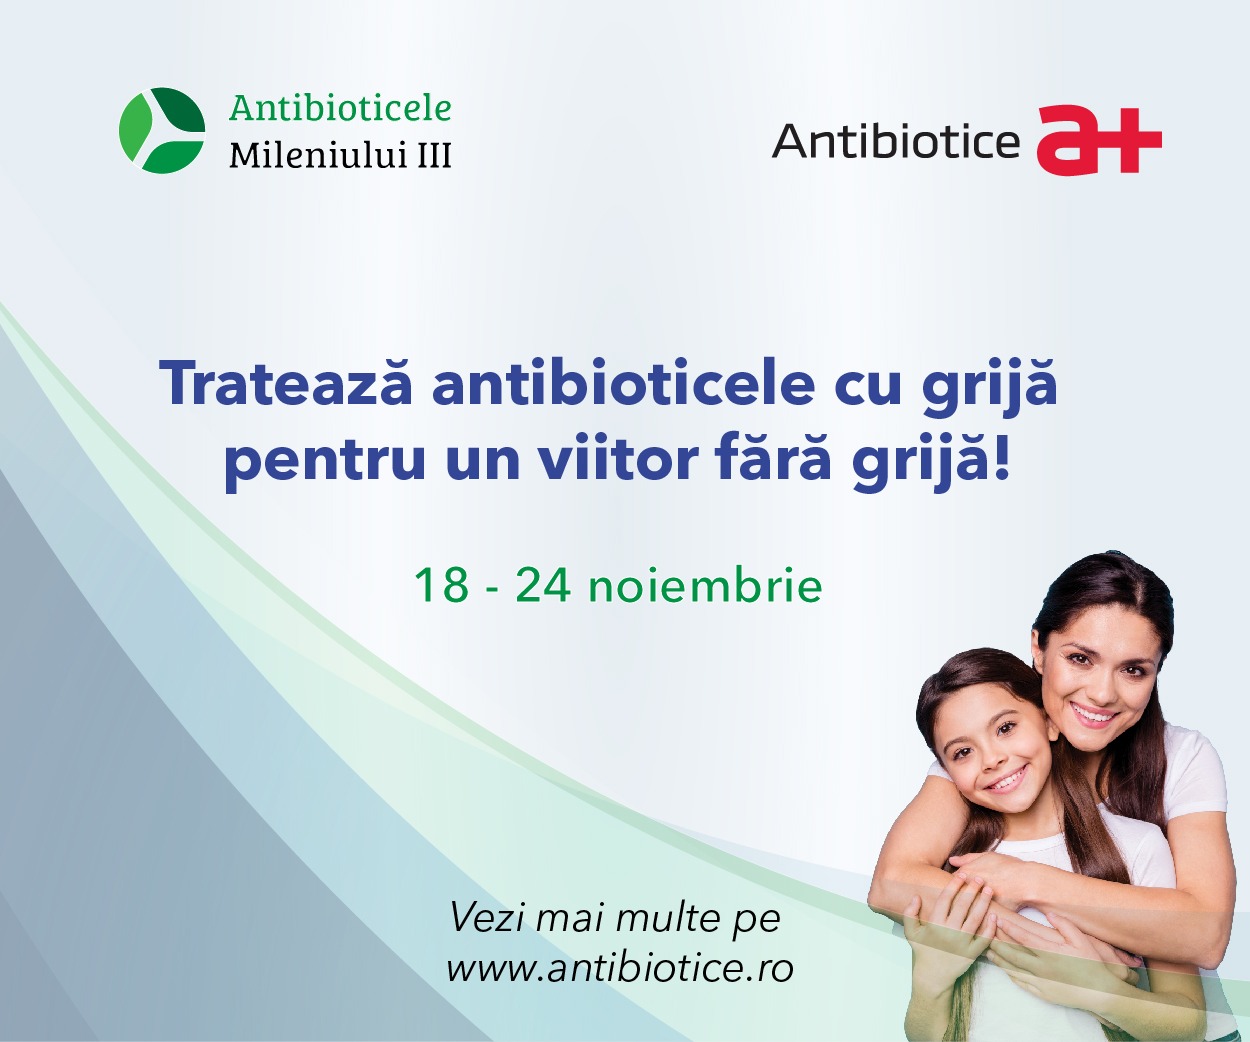 Antibioticele Mileniului III